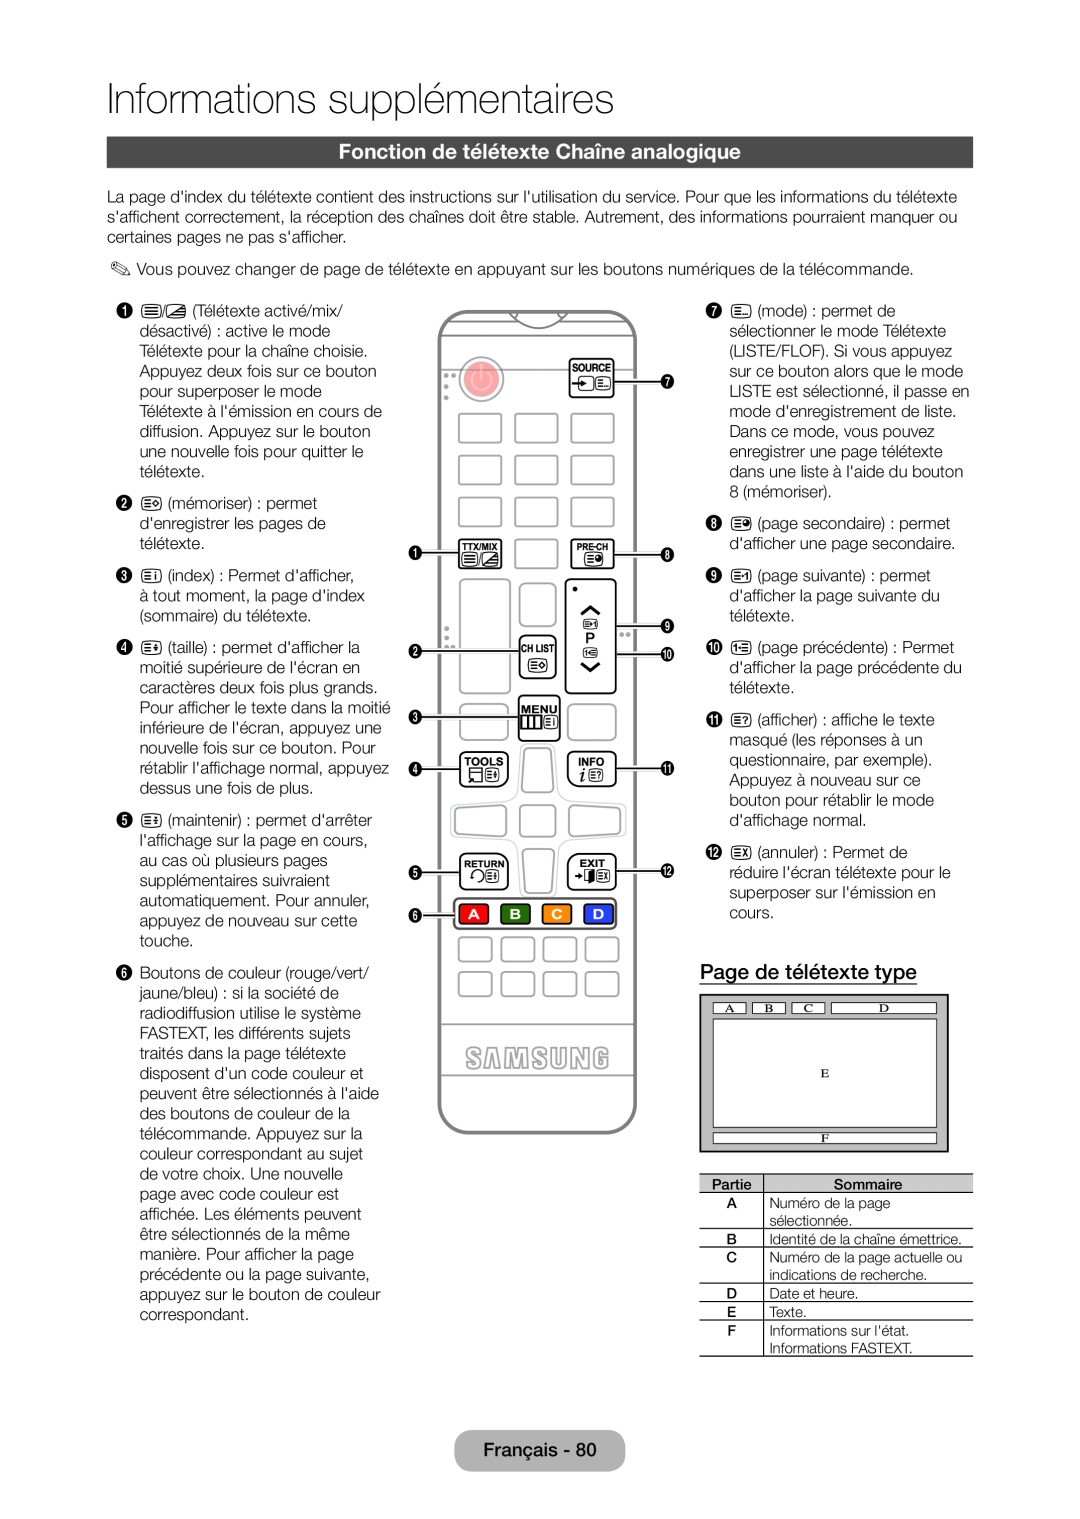 Samsung LT24C350EW/EN manual Fonction de télétexte Chaîne analogique, Page de télétexte type, Informations supplémentaires 